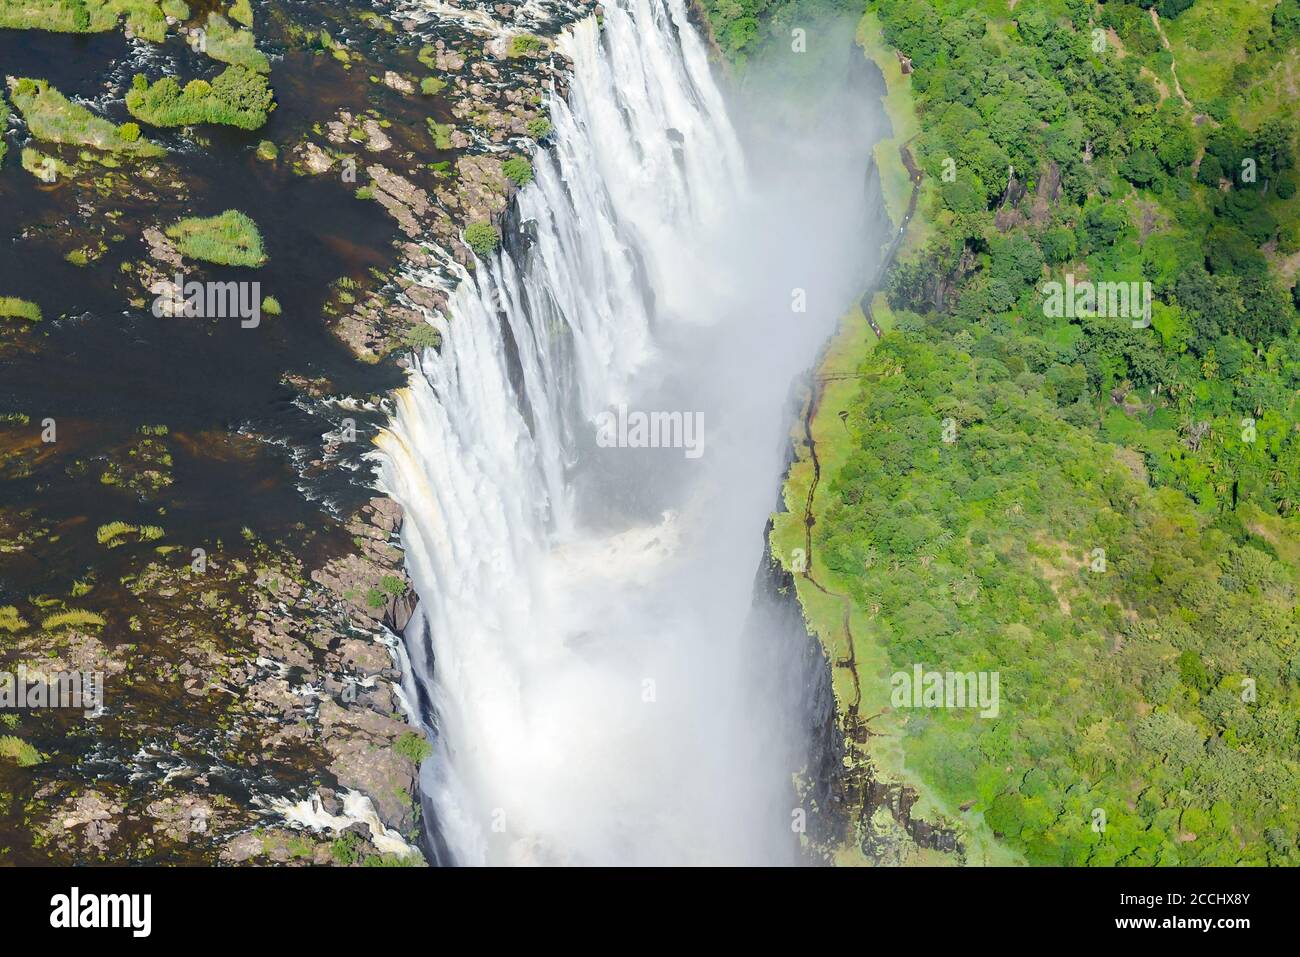 Vista aérea de las Cataratas Victoria situadas en la frontera de Zimbabwe y Zambia. Cascada del río Zambezi en África. Vista en helicóptero de la caída. Foto de stock